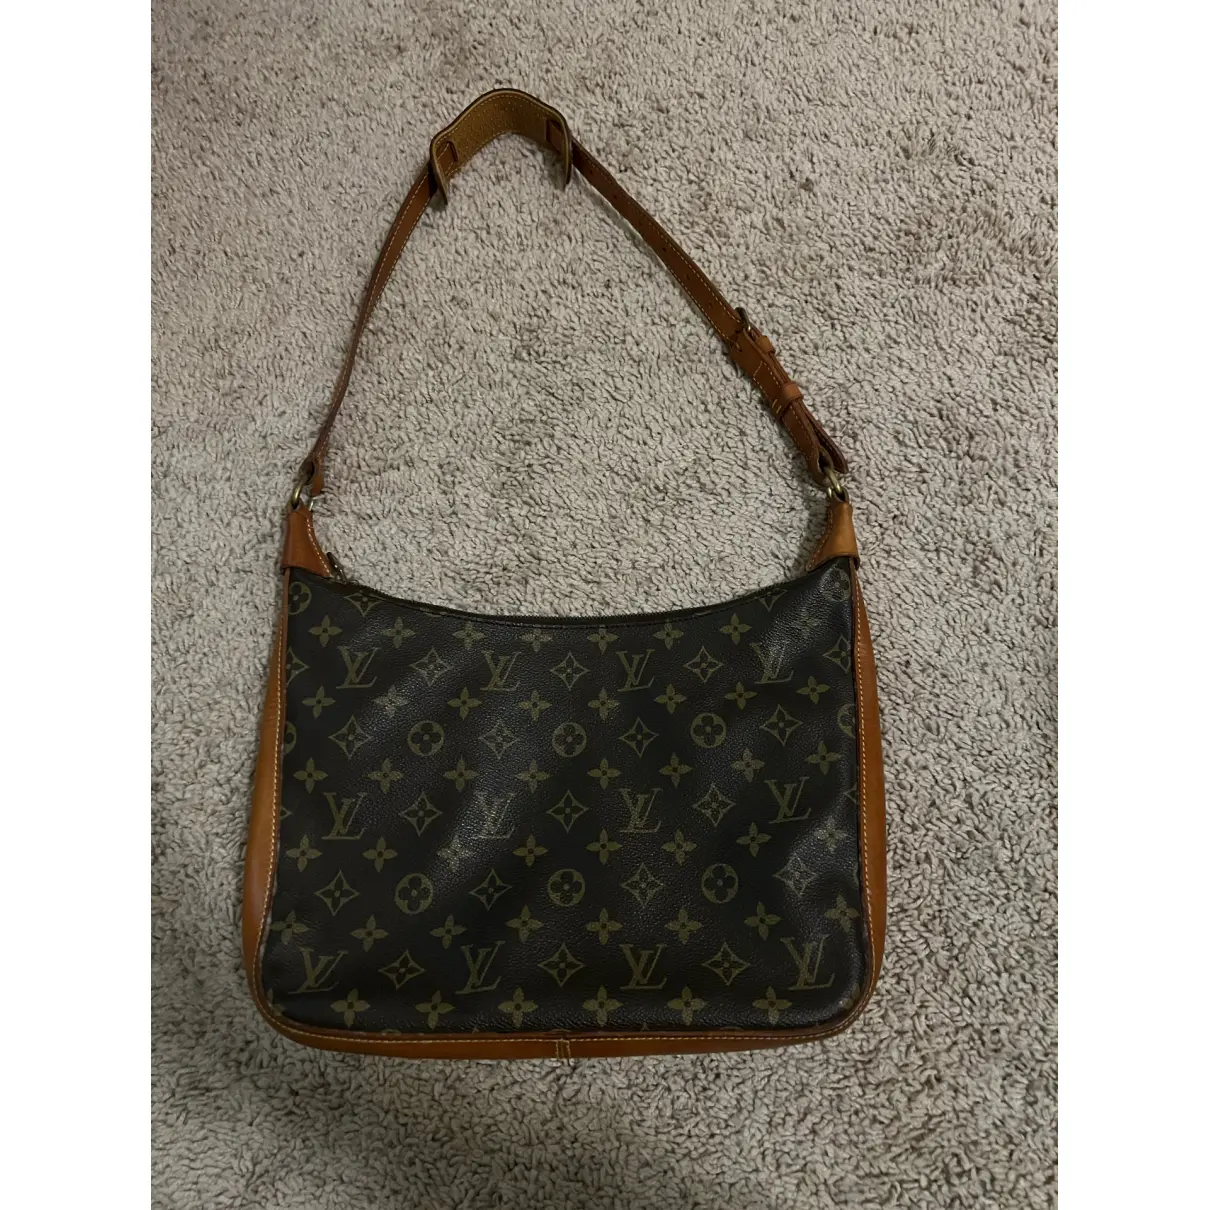 Buy Louis Vuitton Bagatelle Vintage cloth handbag online